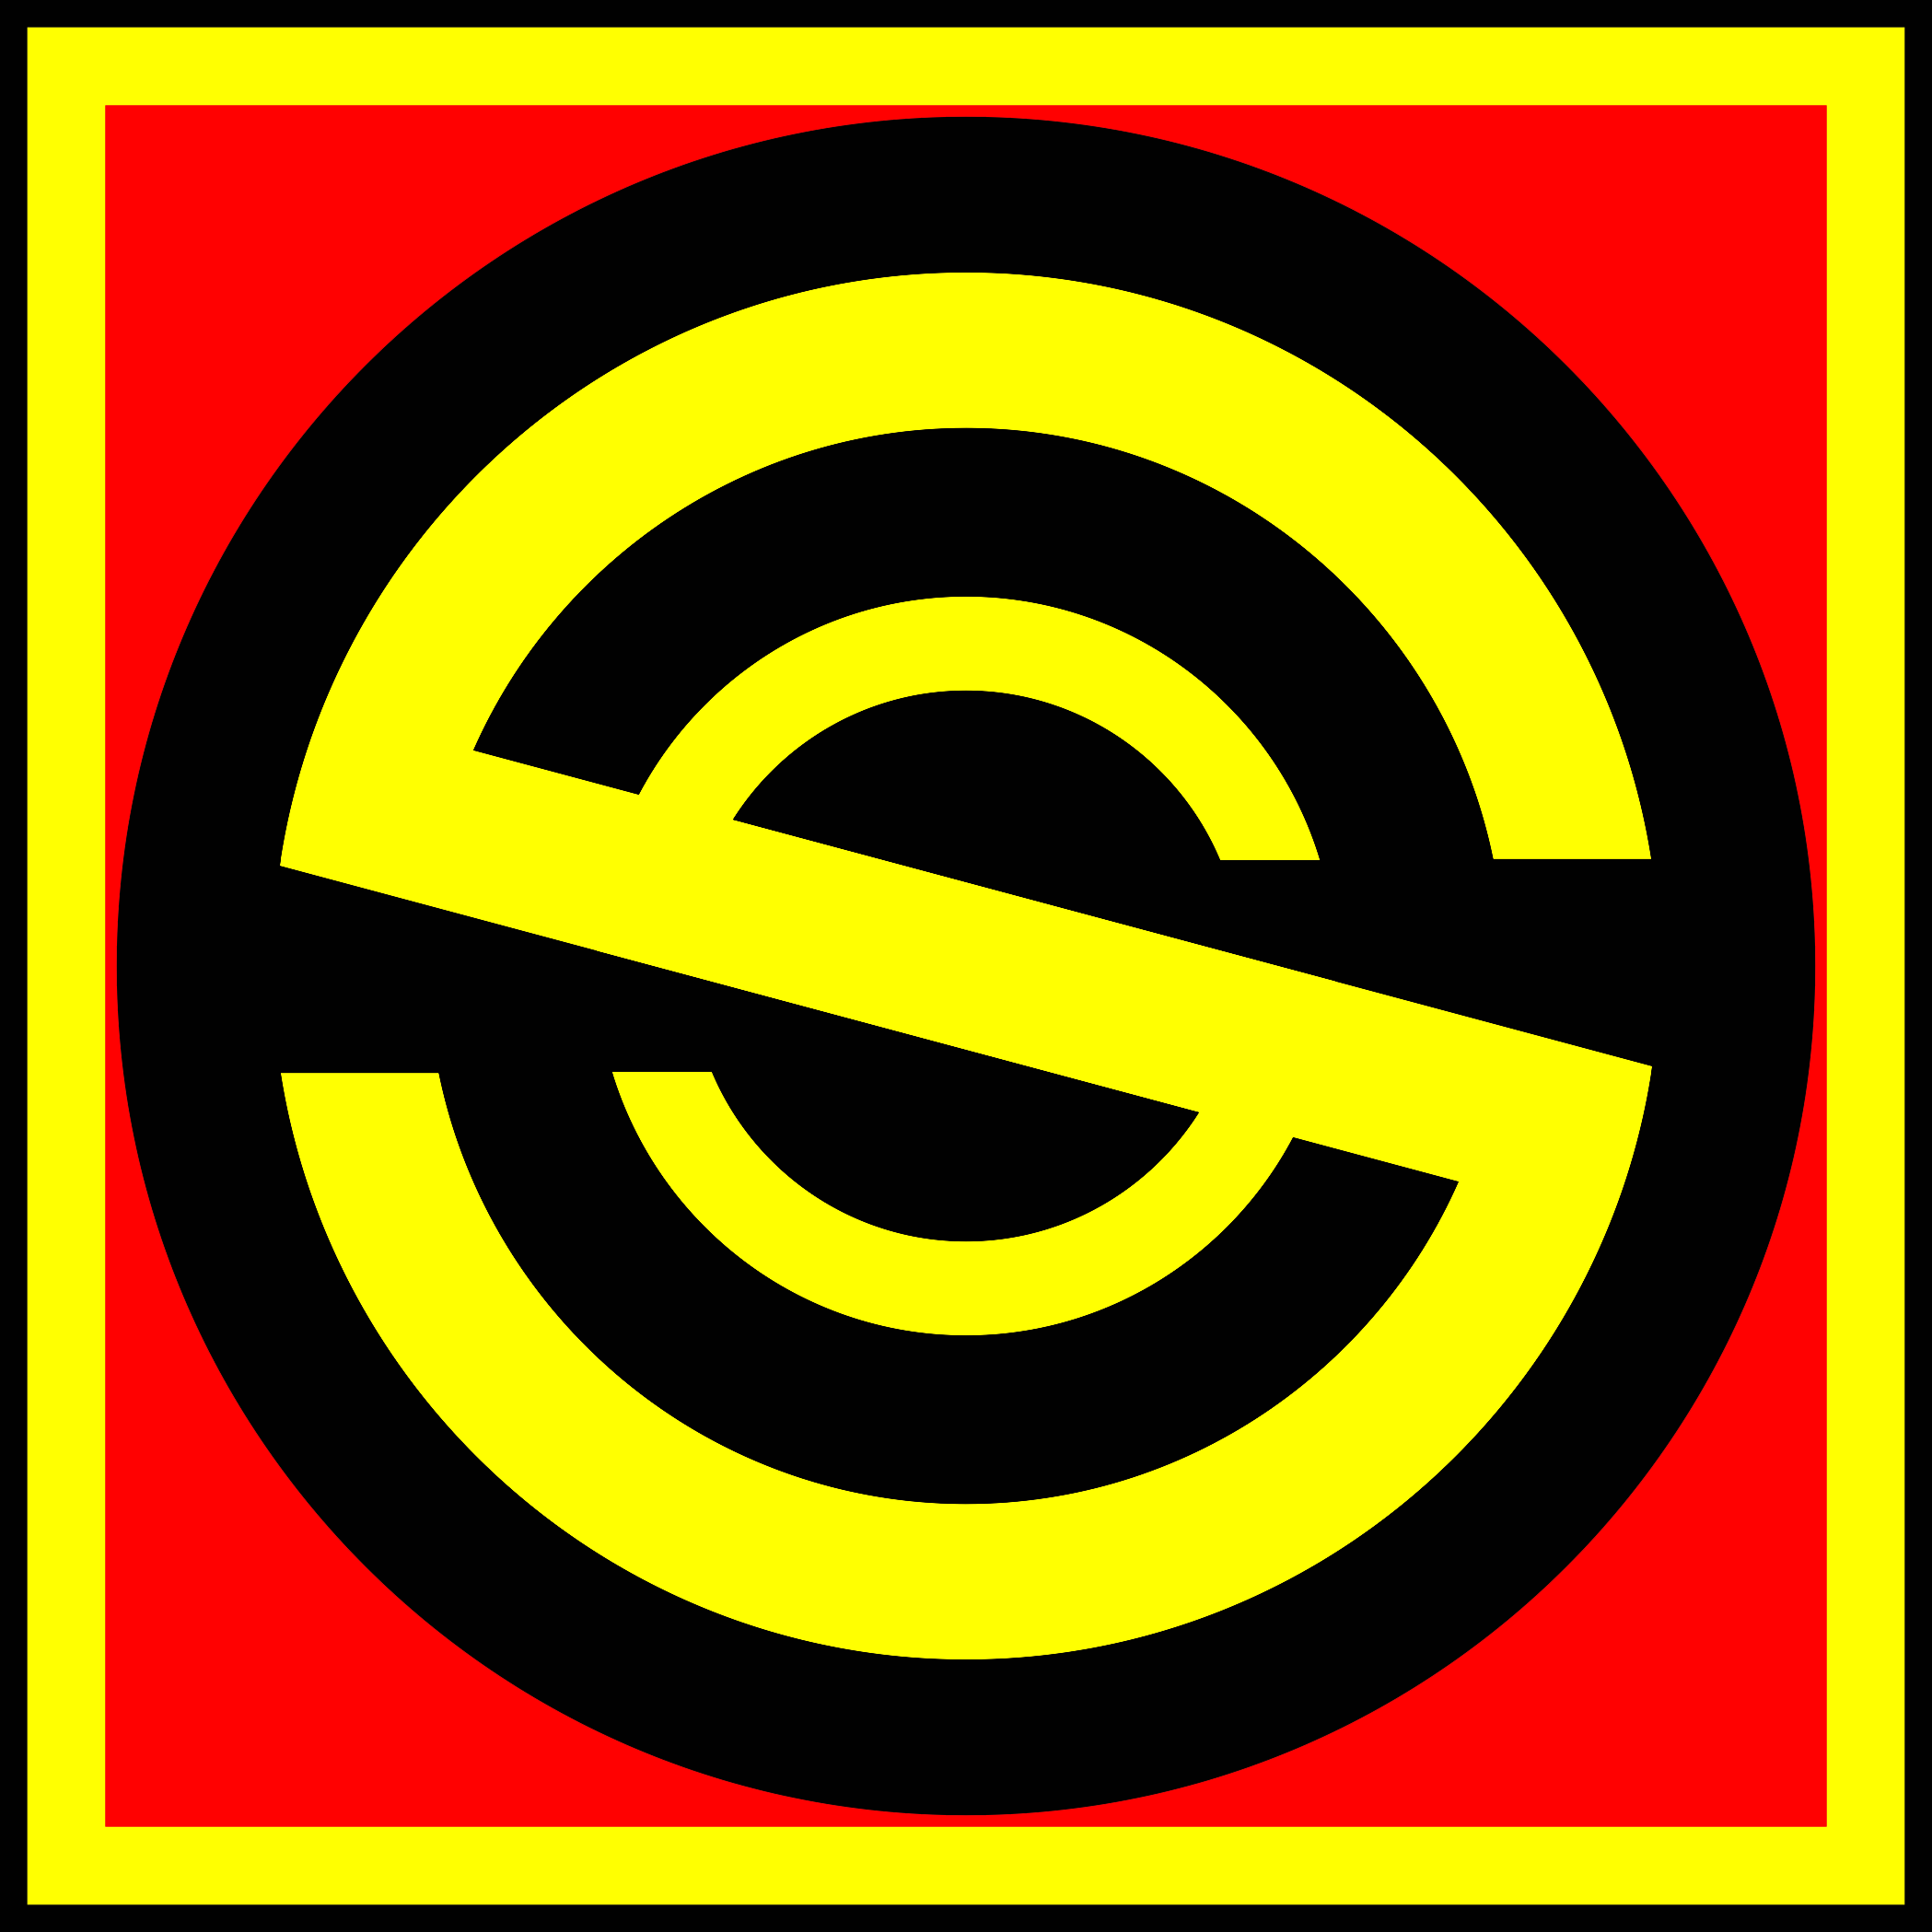 Logo Sangga ku